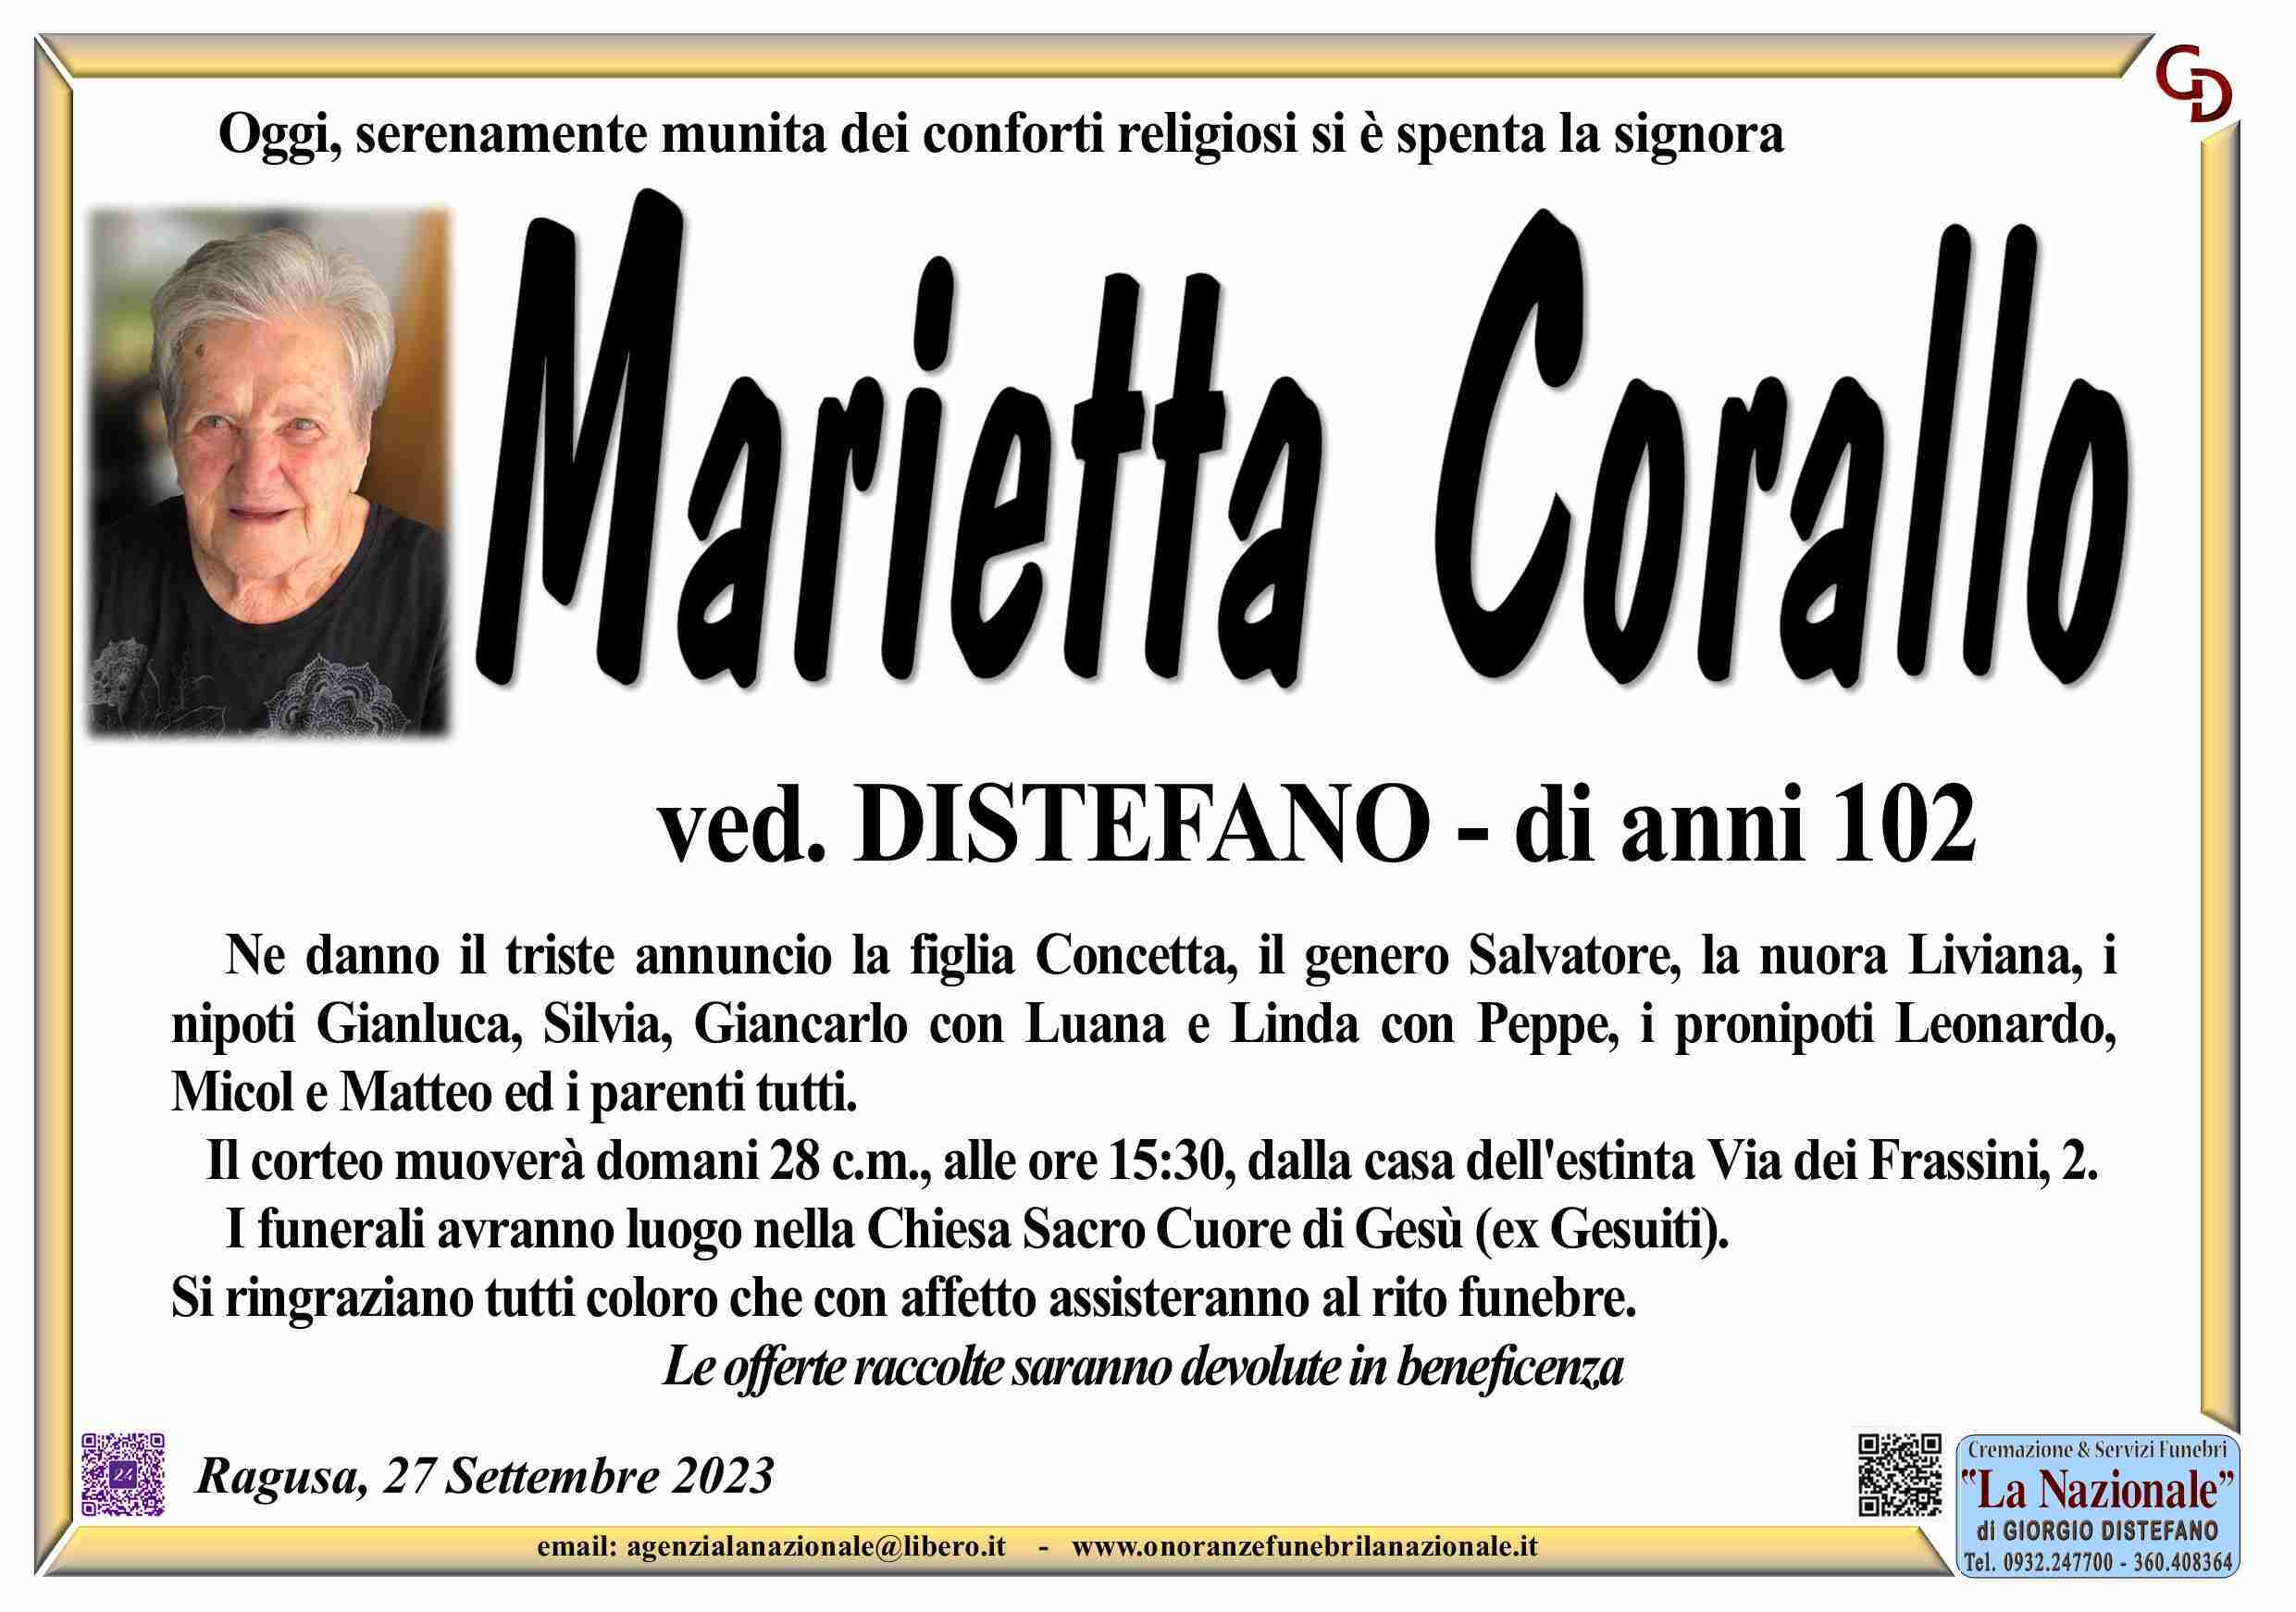 Marietta Corallo